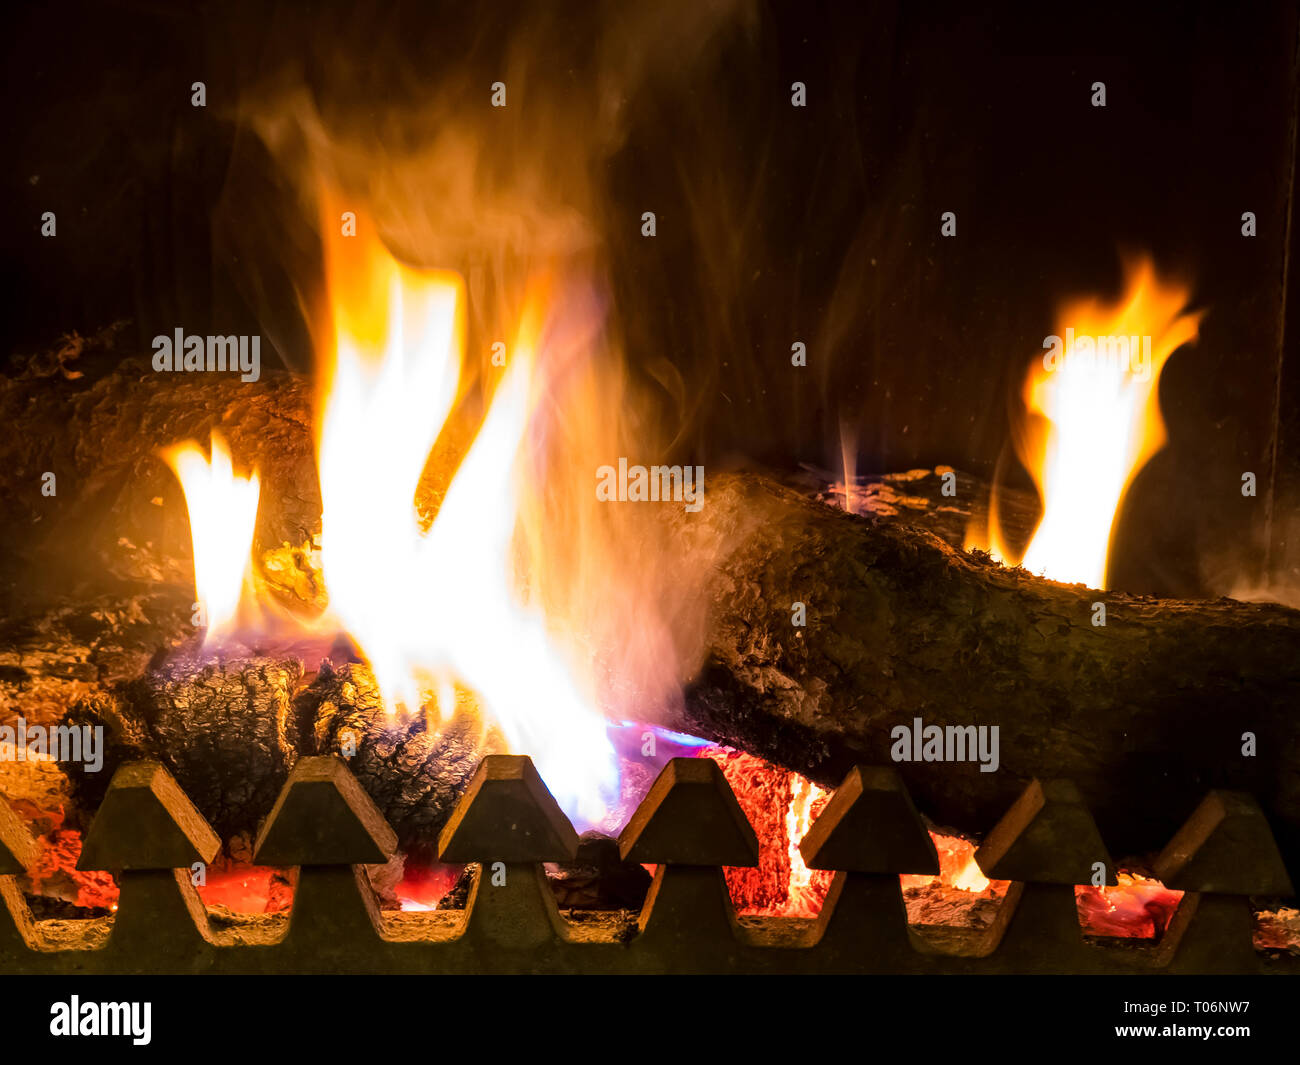 Bruciano carboni e alimentarsi in forno con fiamma arancione Foto Stock